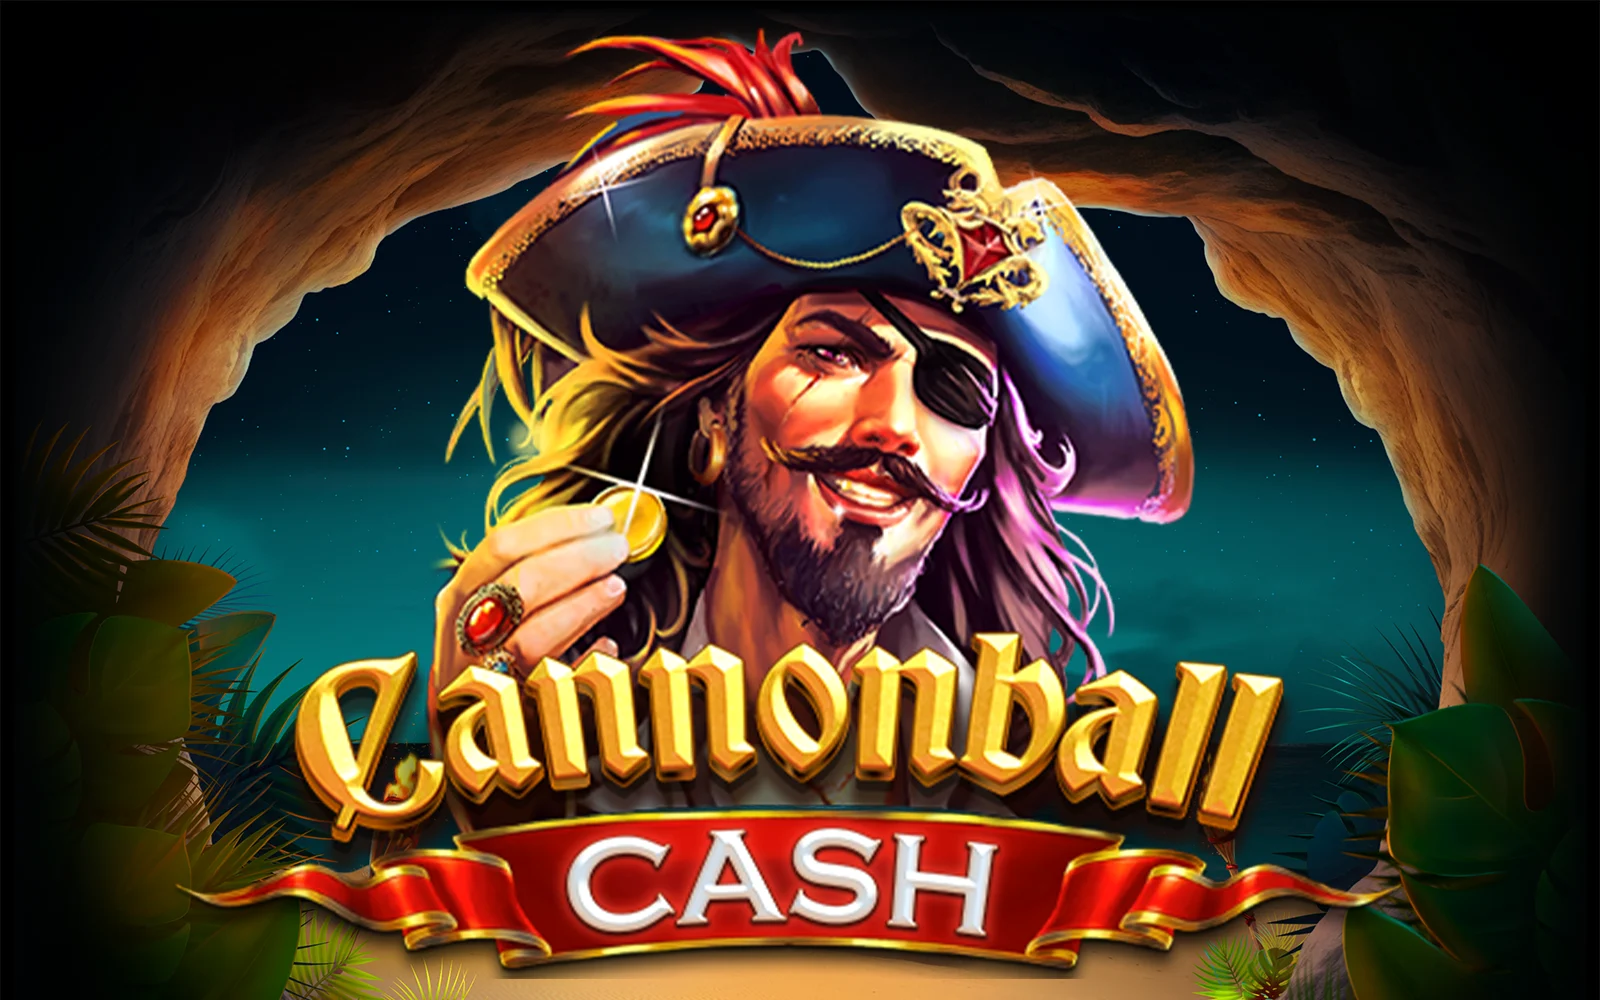 Gioca a Cannonball Cash sul casino online Starcasino.be